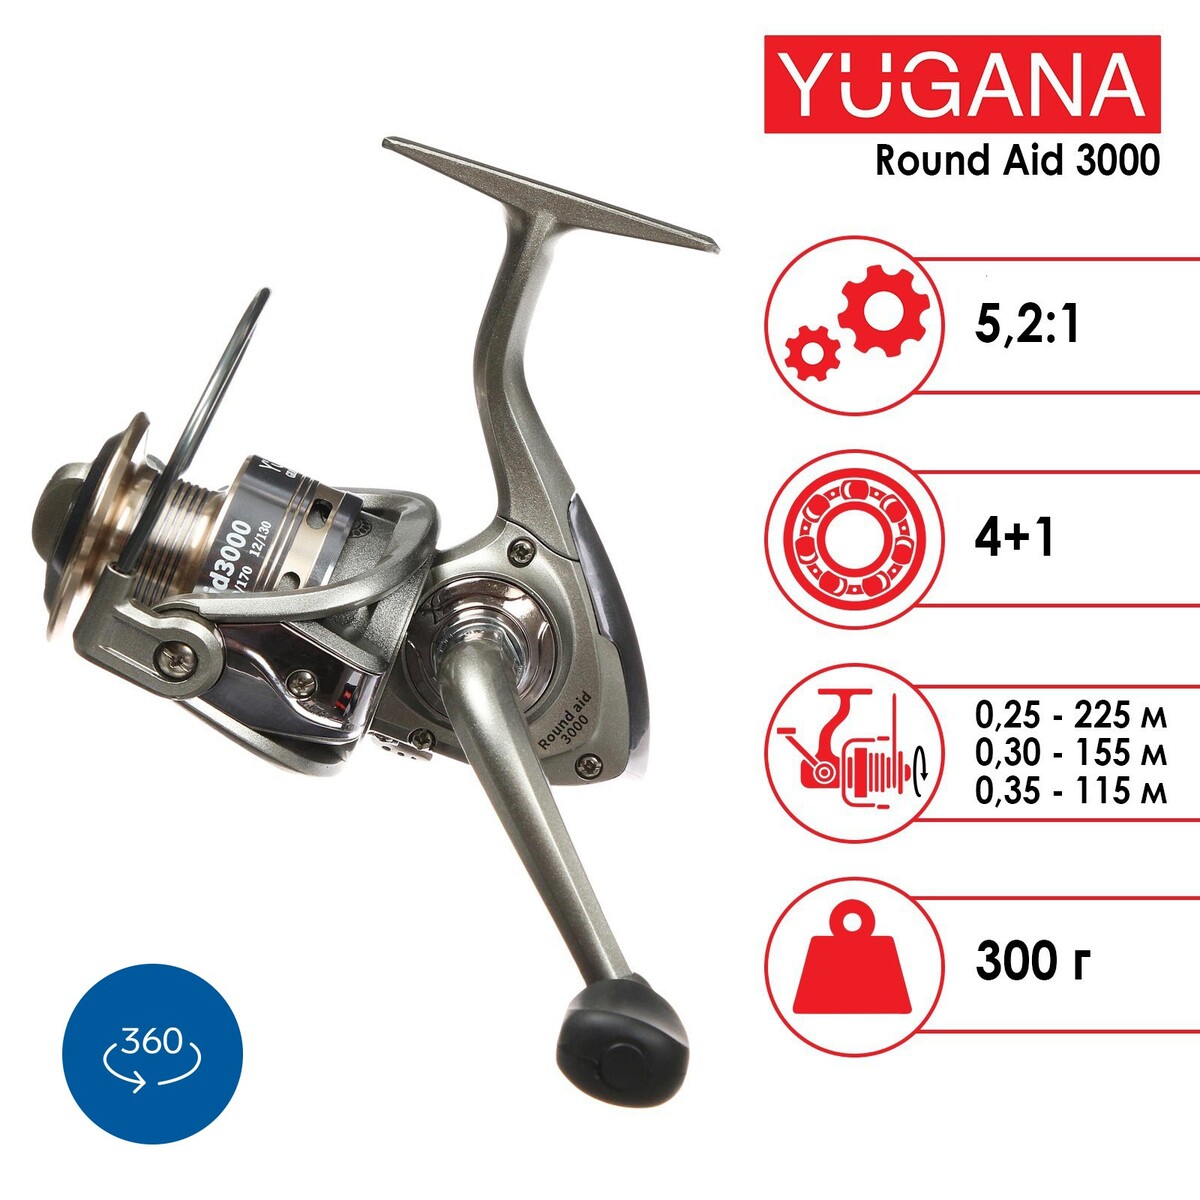  yugana round aid 3000 4+1 , 5.2:1